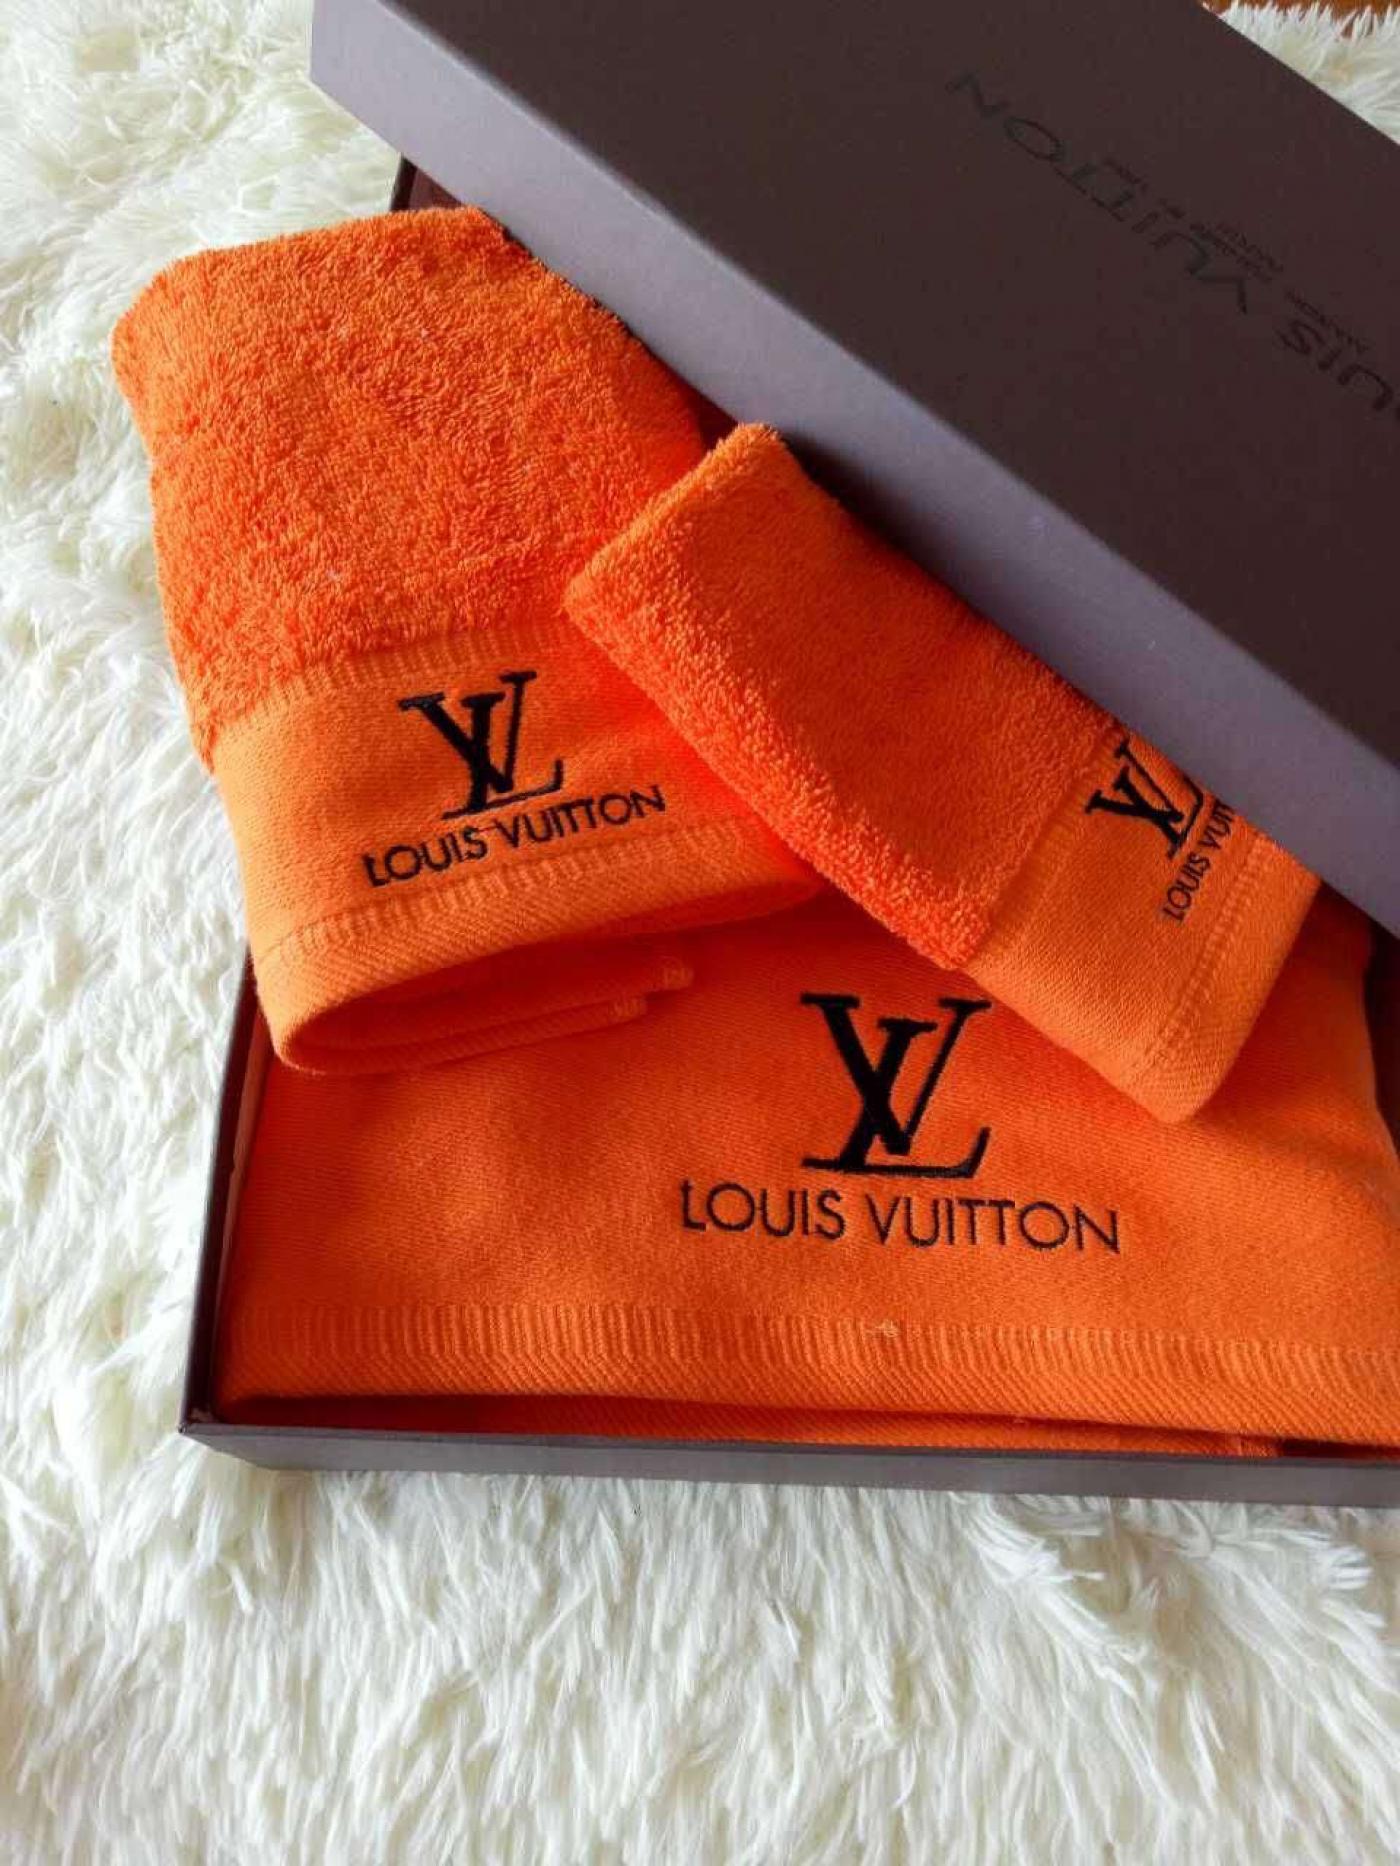 Khăn dùng Louis Vuitton màu cam